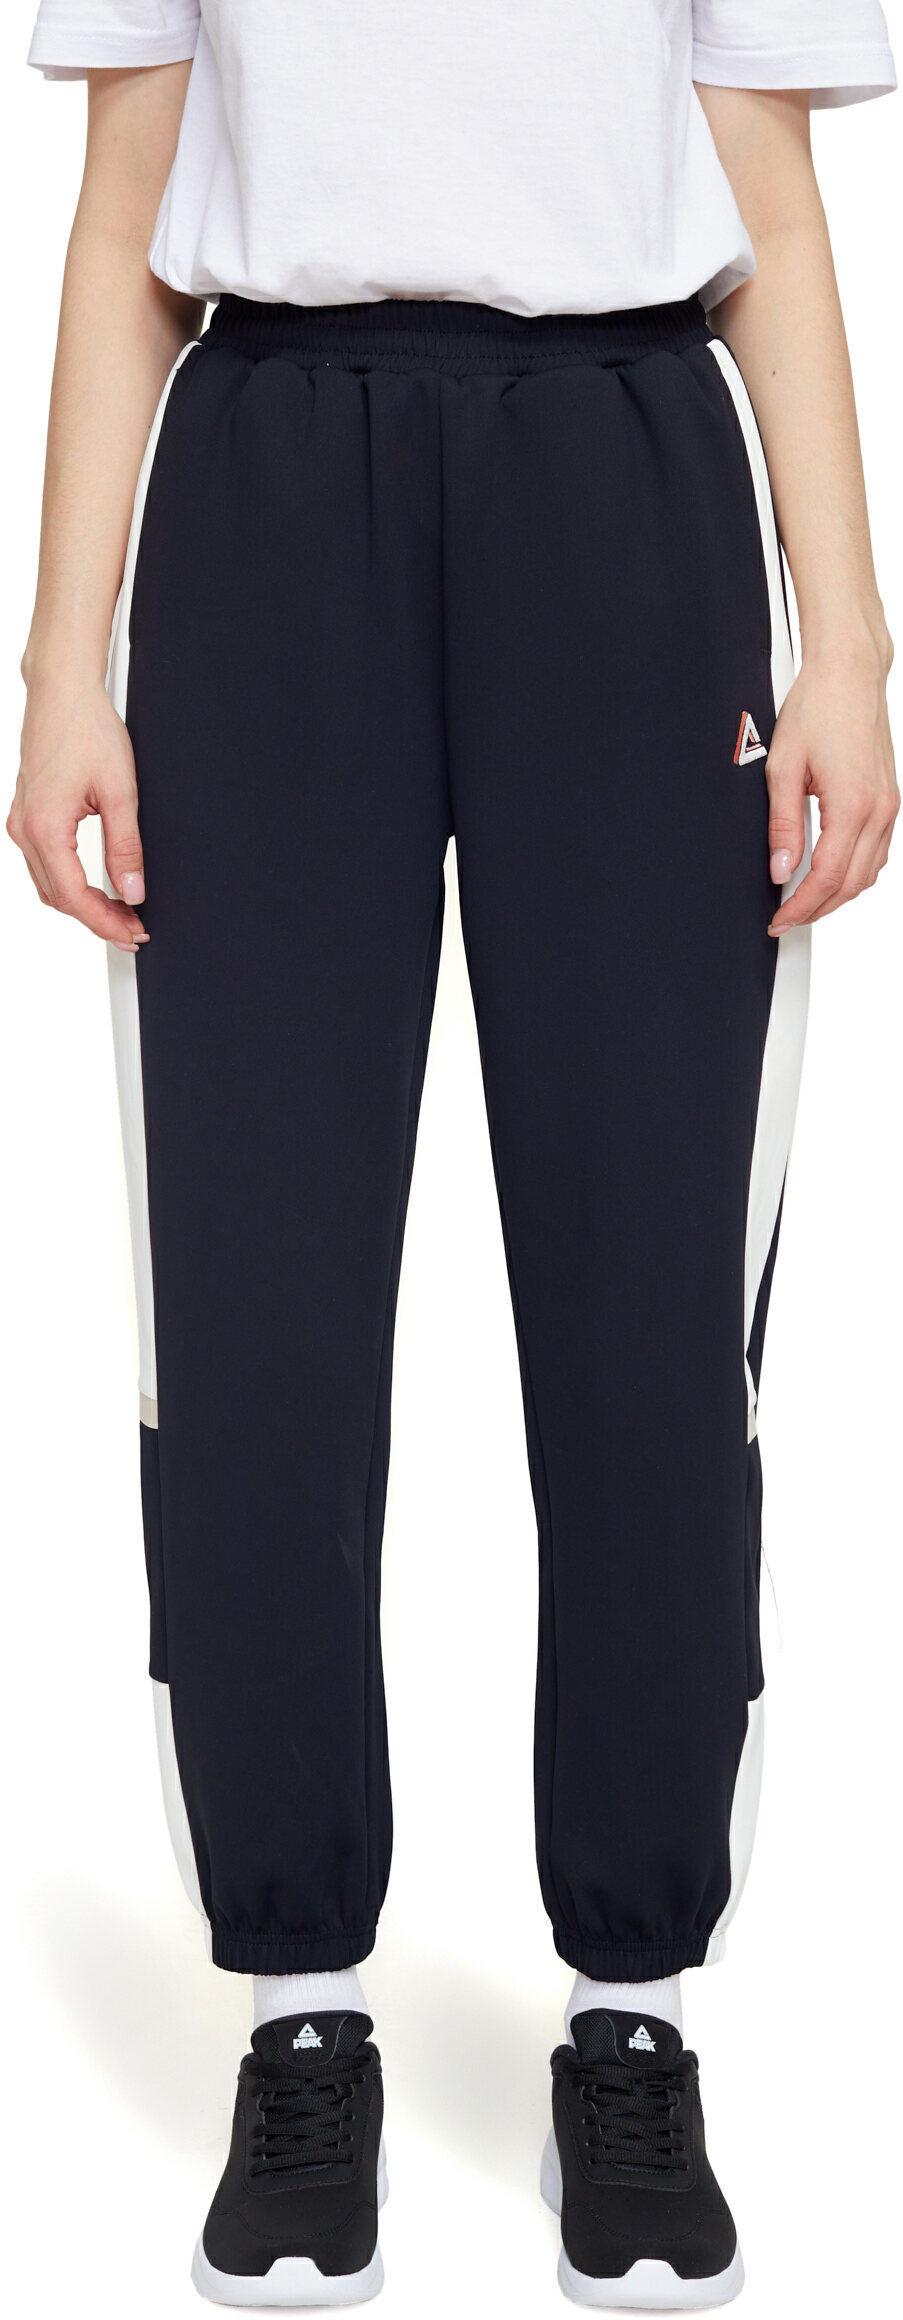 Спортивные брюки женские PEAK Knitted Pants черные 2XL